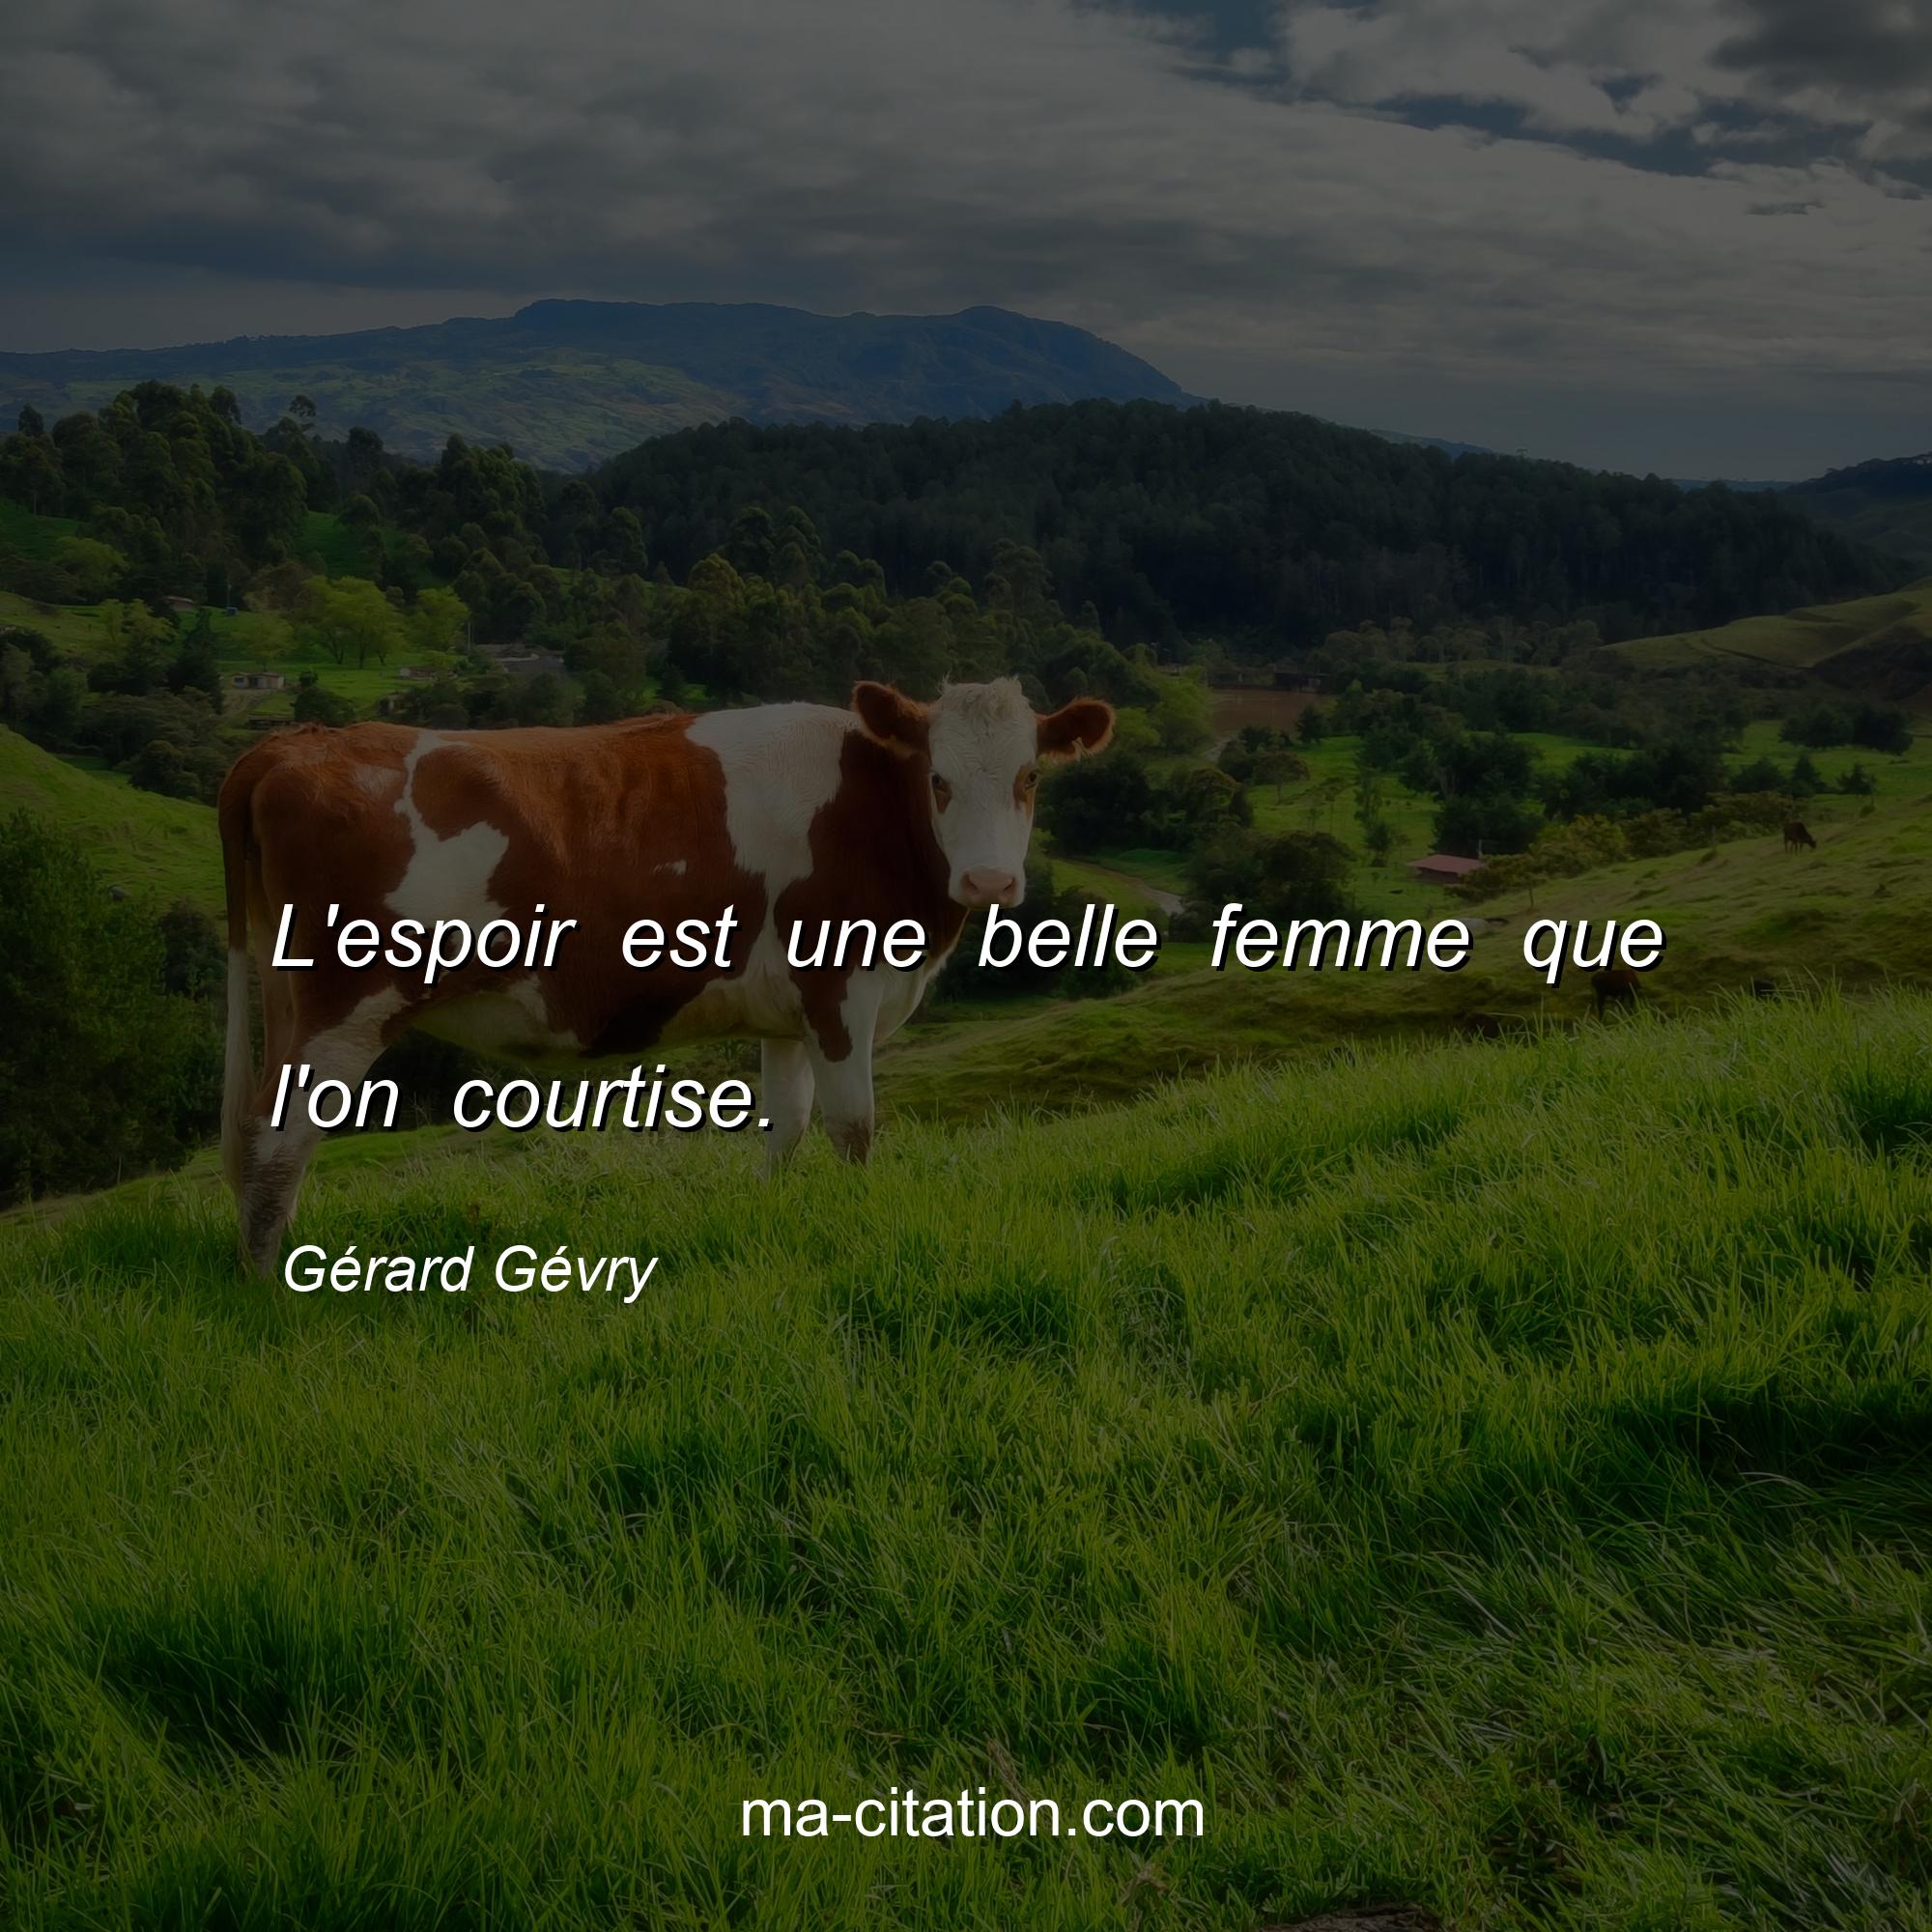 Gérard Gévry : L'espoir est une belle femme que l'on courtise.